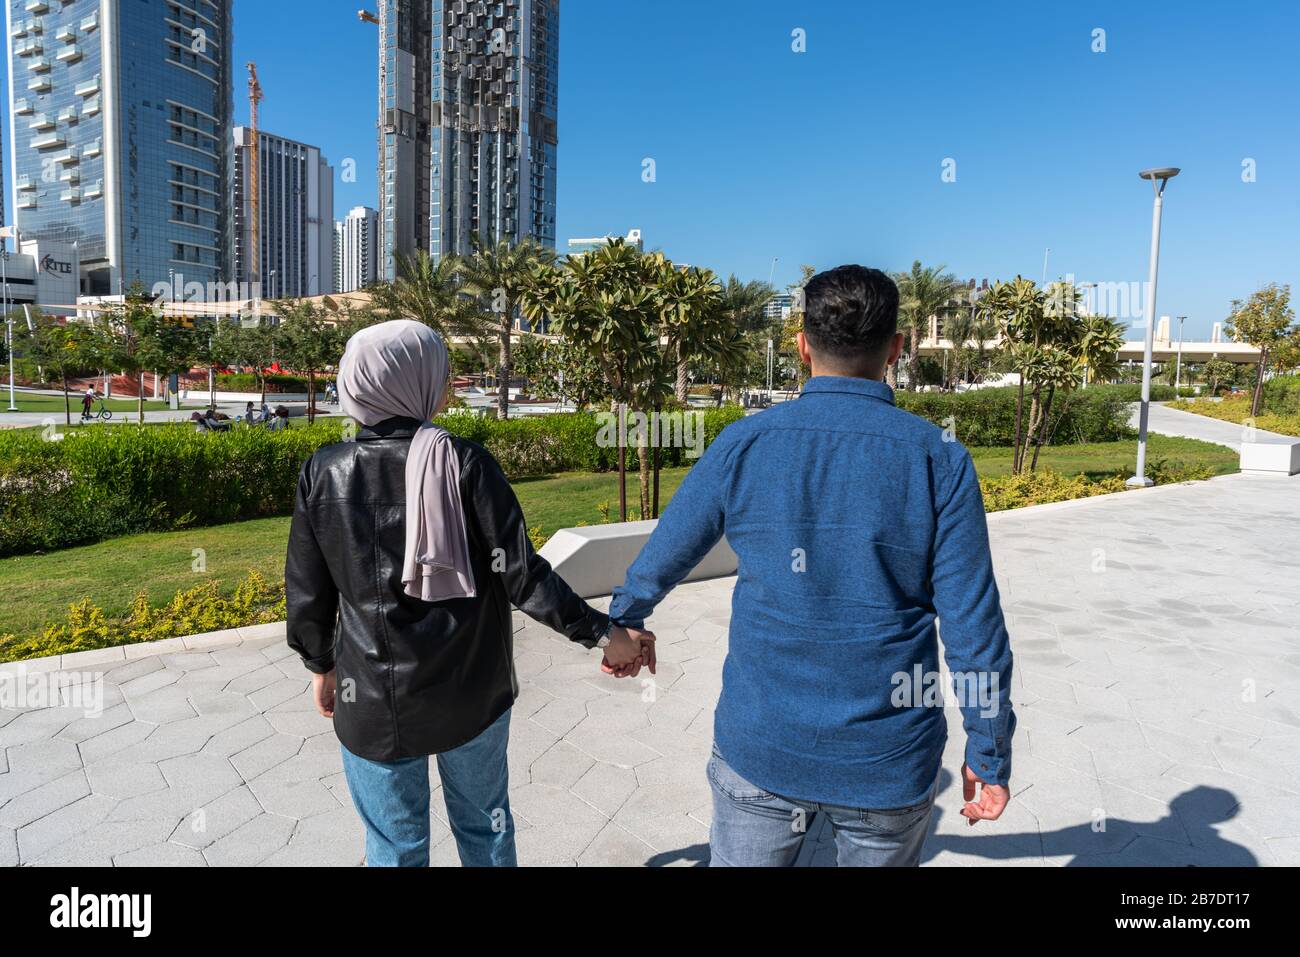 Muslimisches Paar liebt es, in einem Park draußen zu gehen und gleichzeitig die Hände zu halten Stockfoto